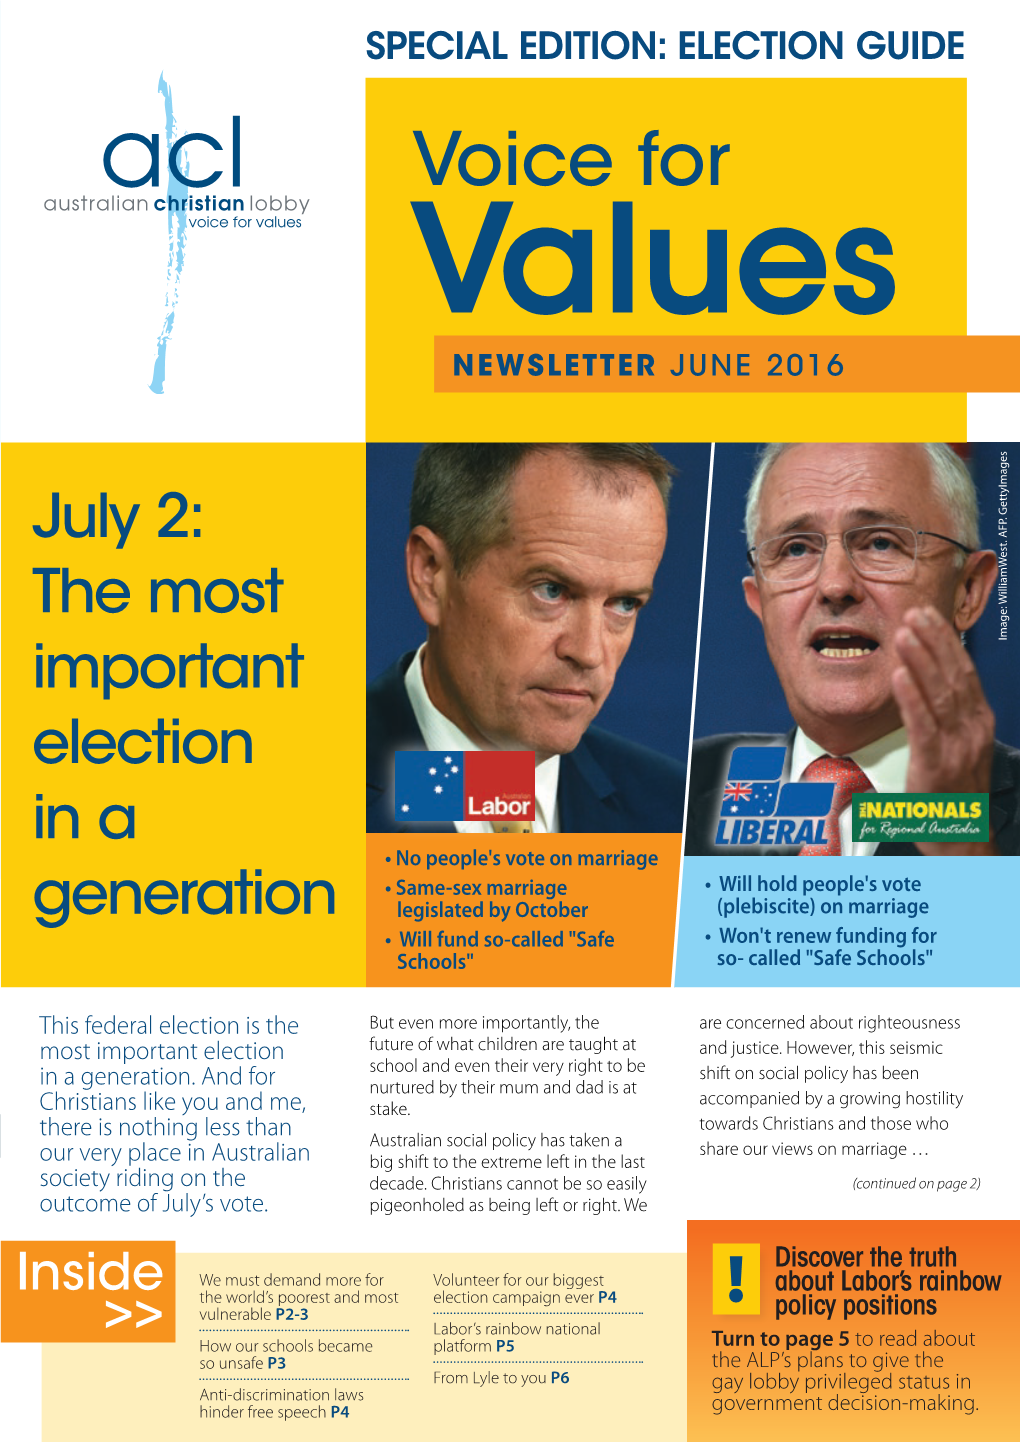 Voice for Values NEWSLETTER JUNE 2016